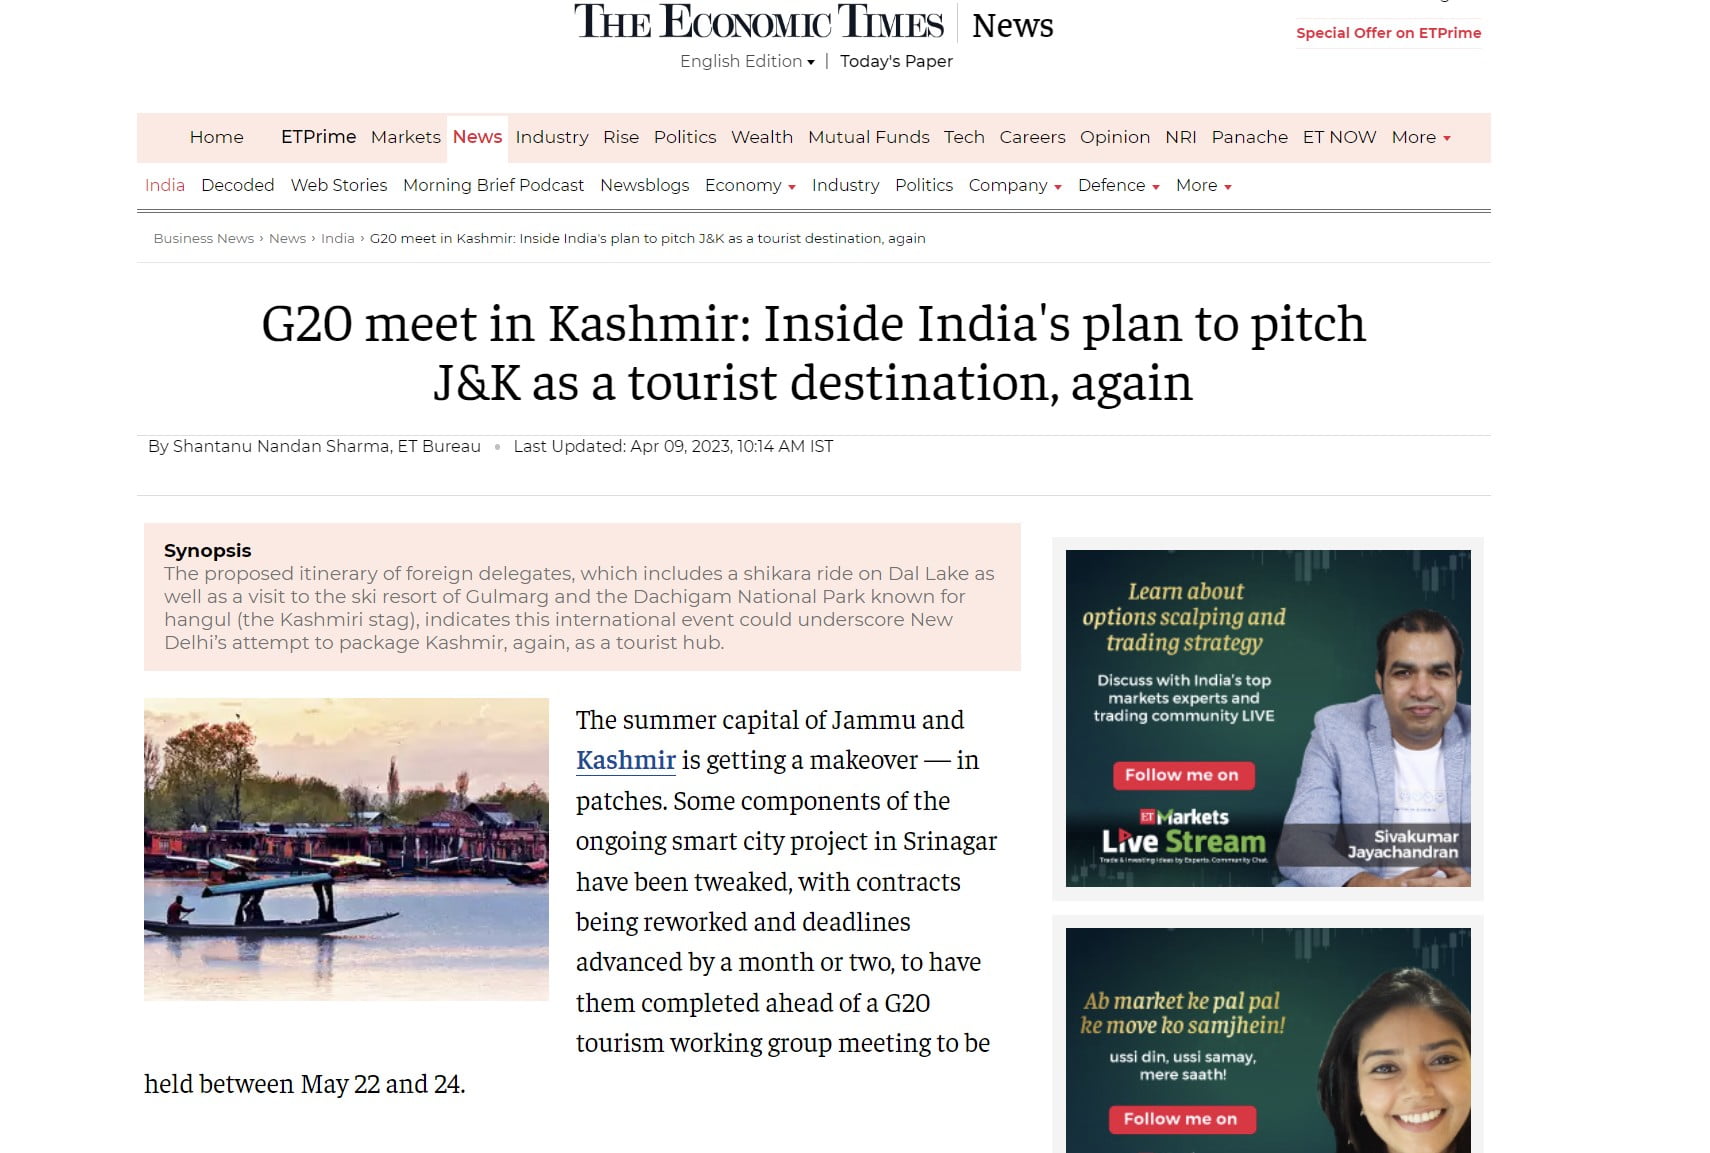 Σύνοδος των G20 στο Κασμίρ: Το σχέδιο της Ινδίας να καταστεί η περιοχή ξανά ελκυστικός τουριστικός προορισμός